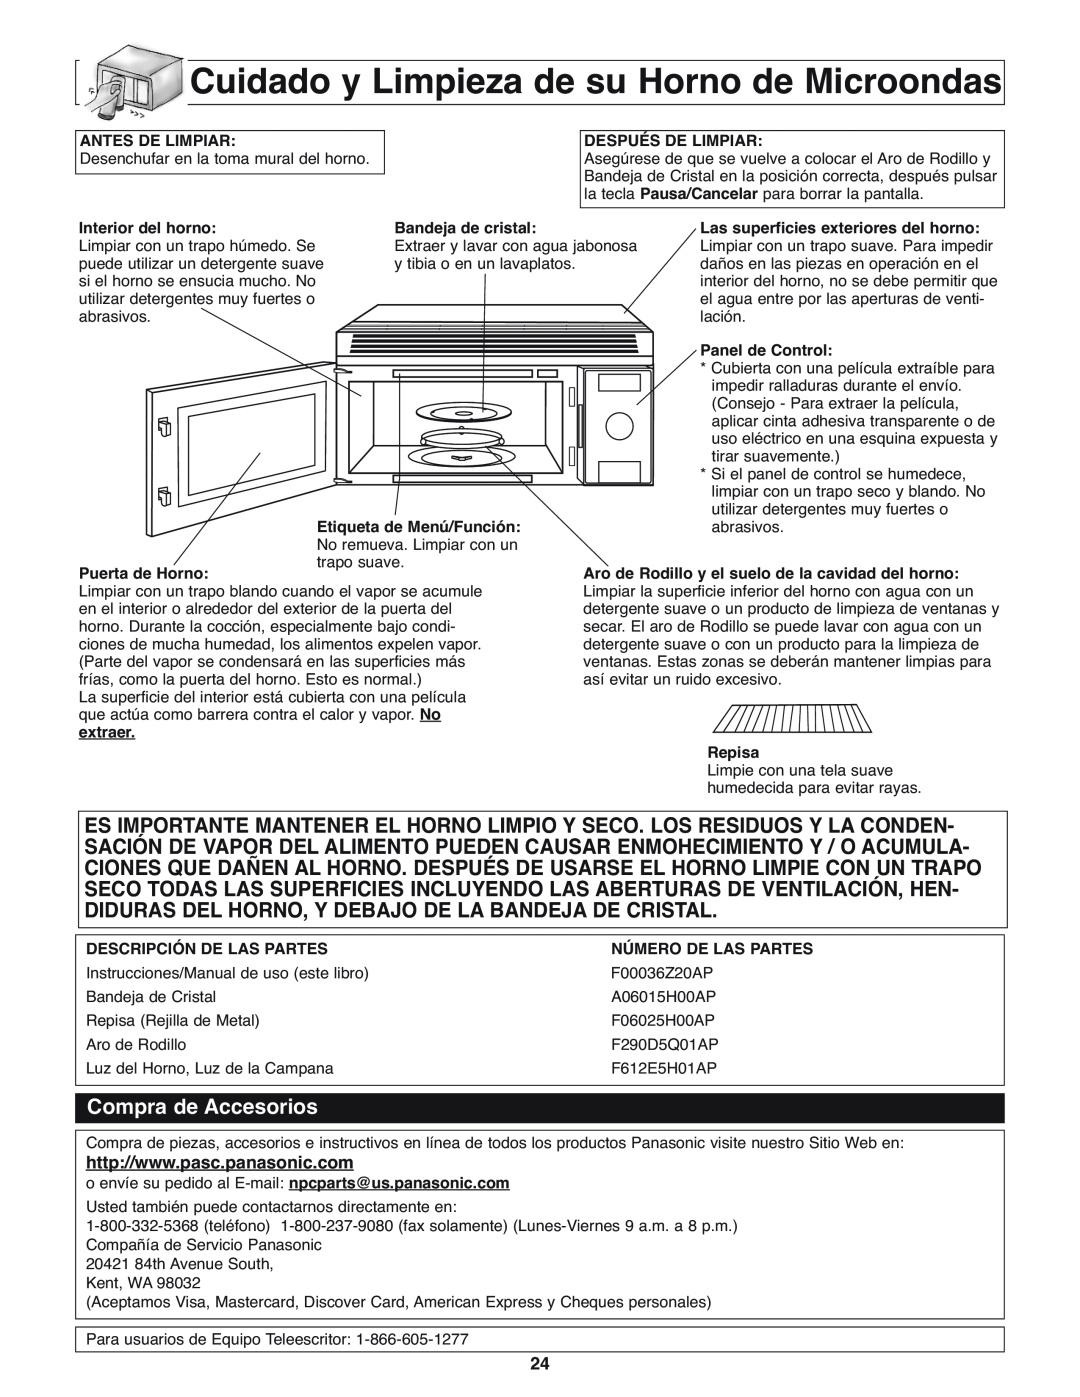 Panasonic NN-H275 operating instructions Cuidado y Limpieza de su Horno de Microondas, Compra de Accesorios 